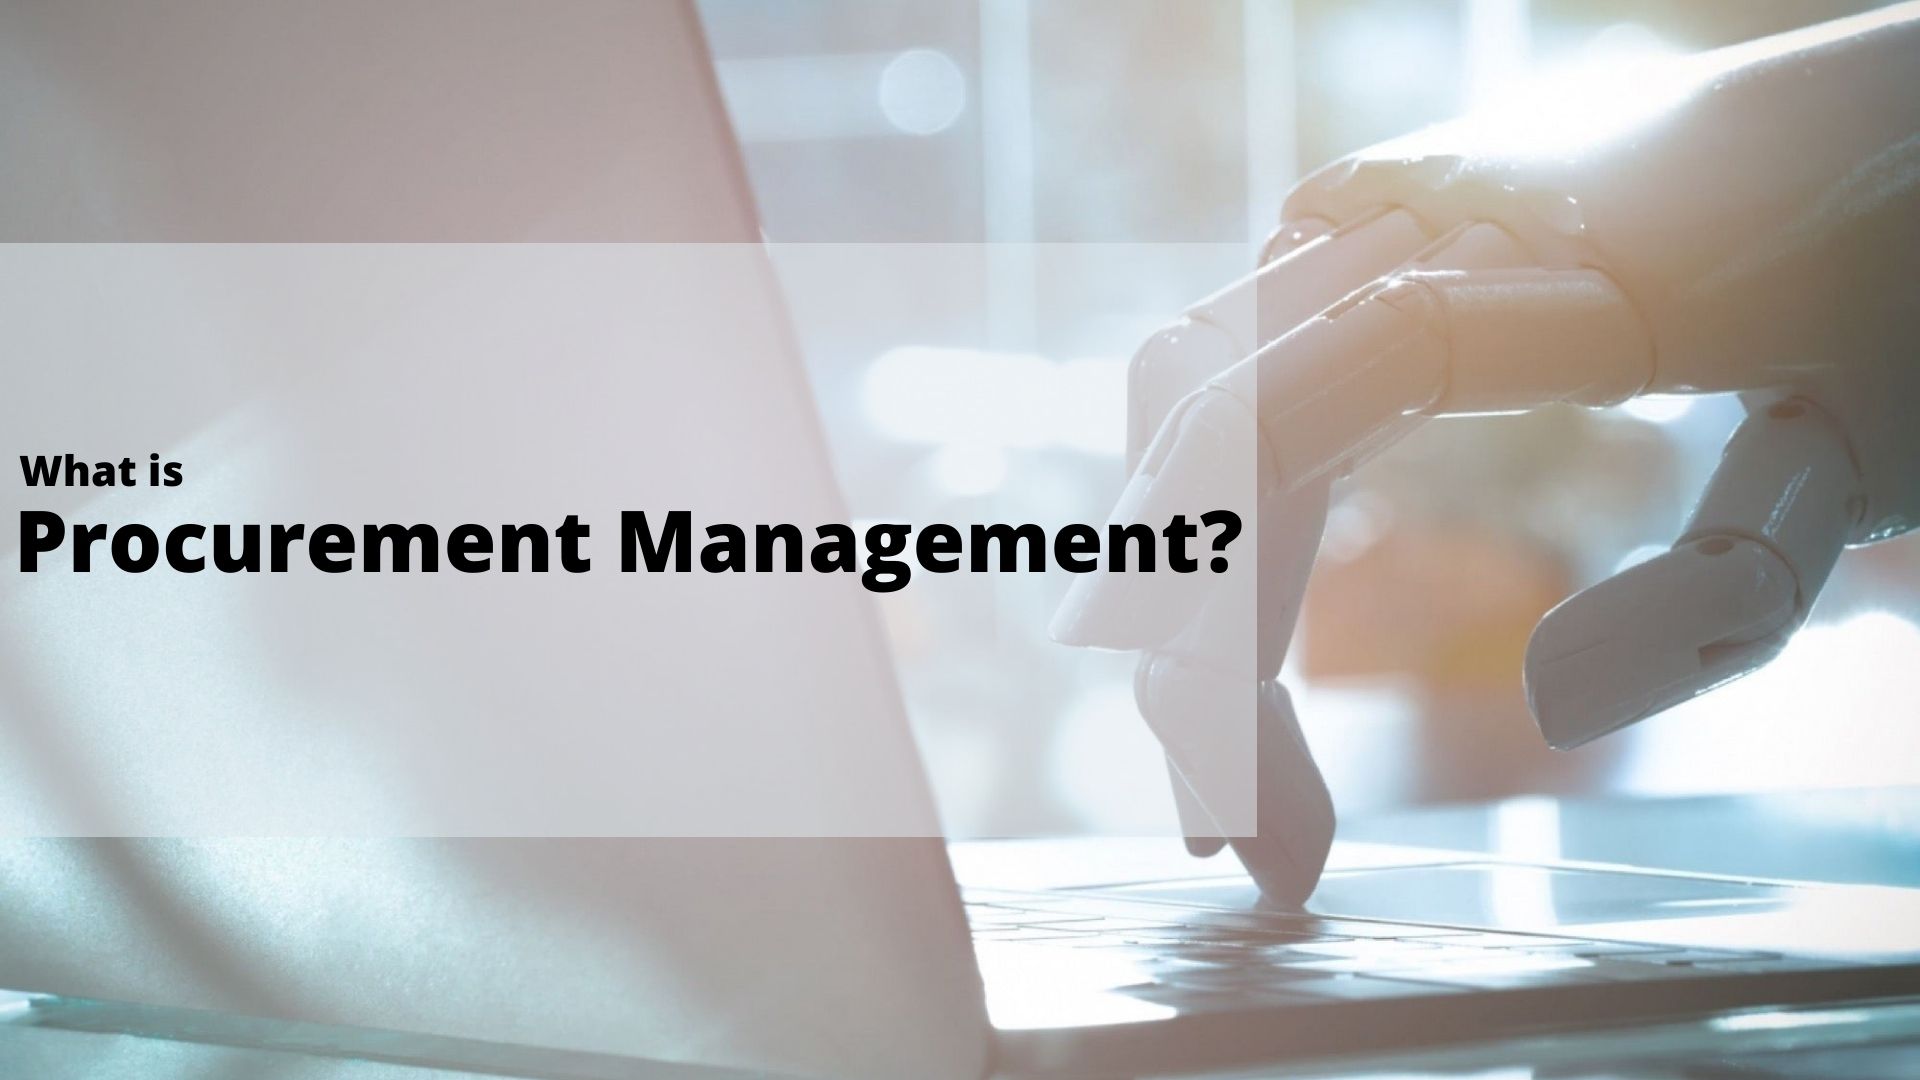 What is Procurement Management